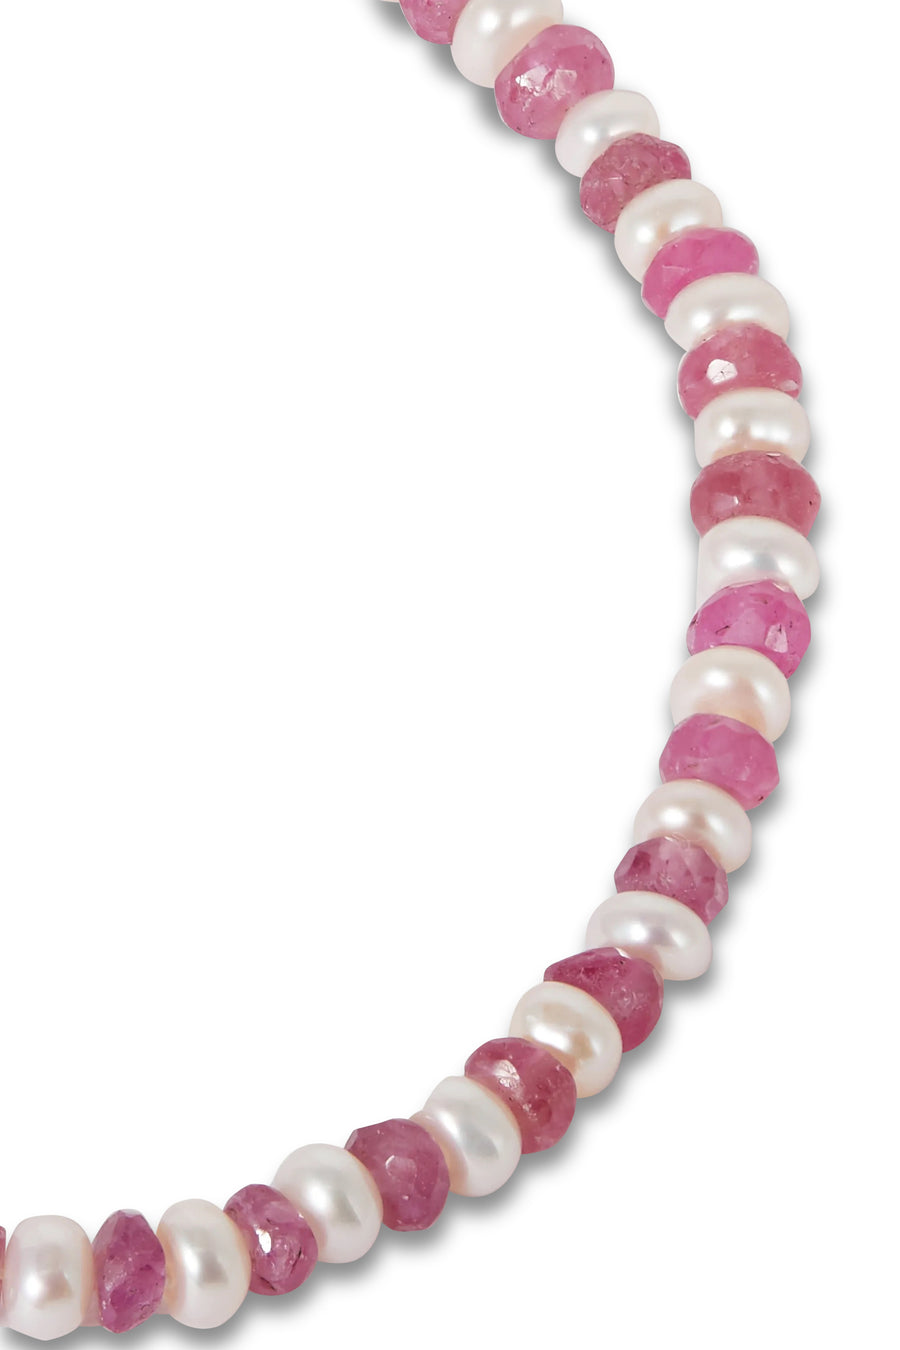 Ocean Pearl & Pink Sapphire Bracelet